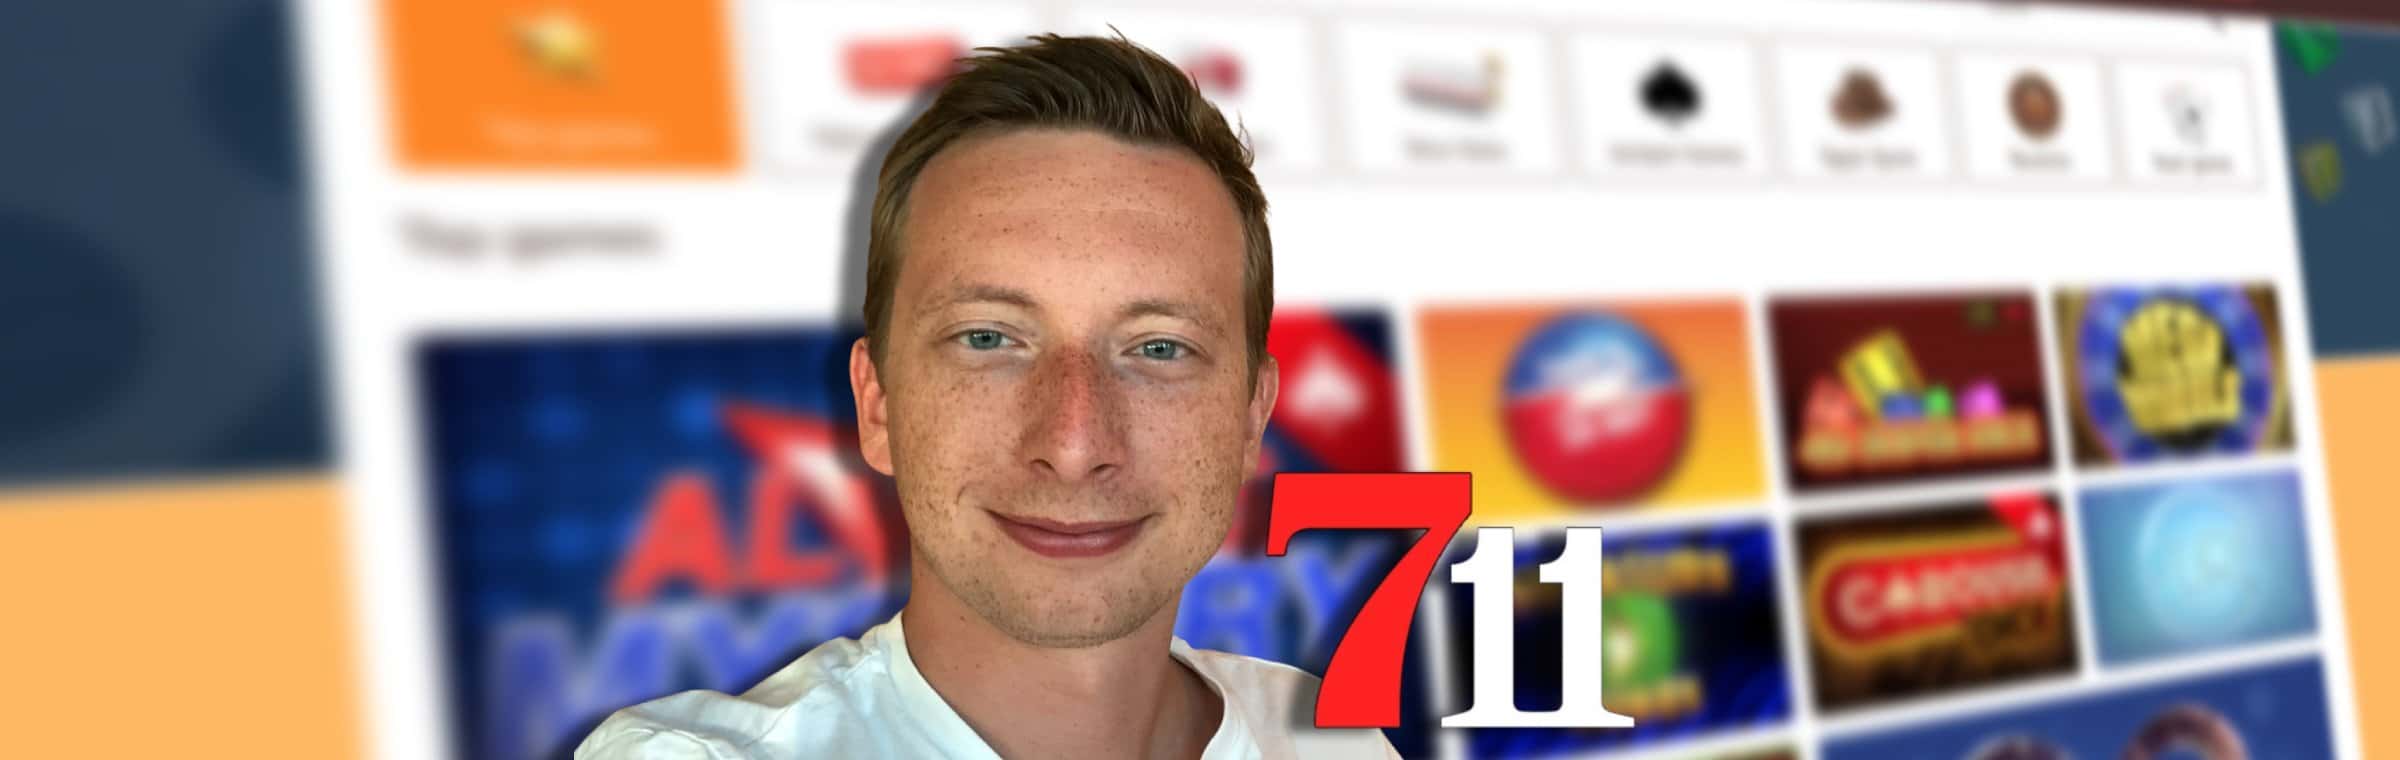 Tom De Backer, CEO van 711 BV, het bedrijf achter online casino 711.nl